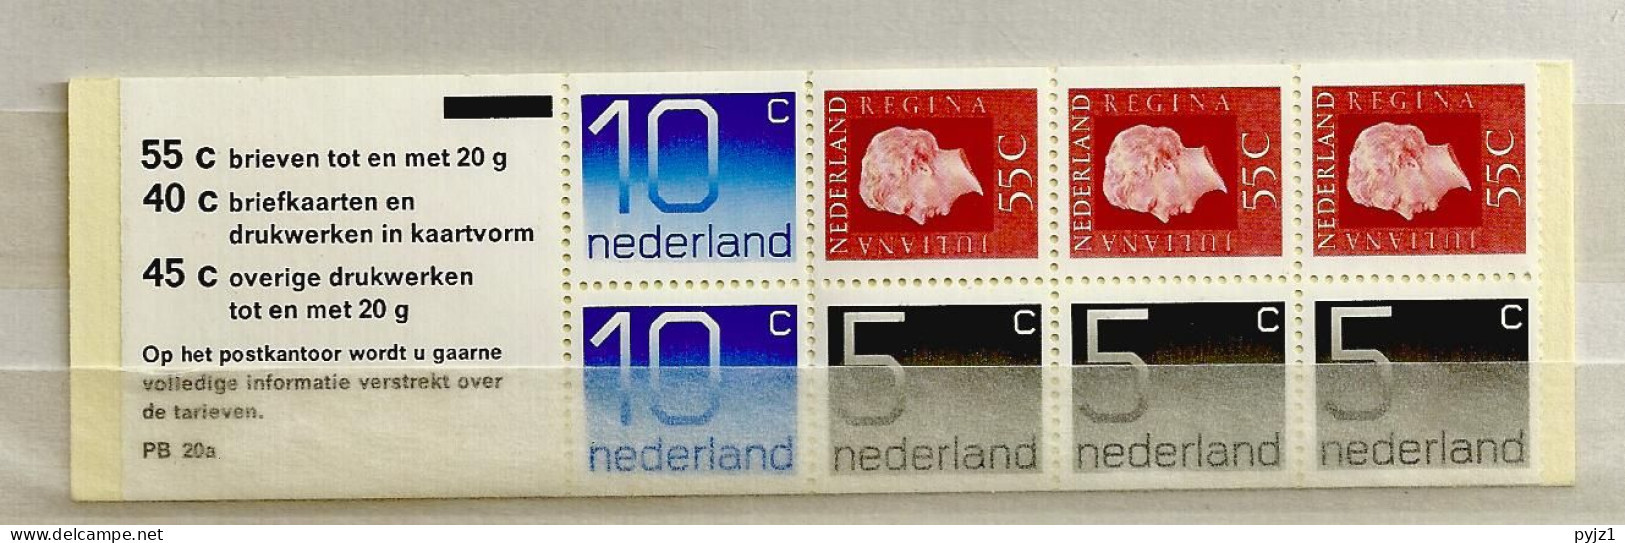 1976 MNH PB 20a  Nederland Postfris - Cuadernillos